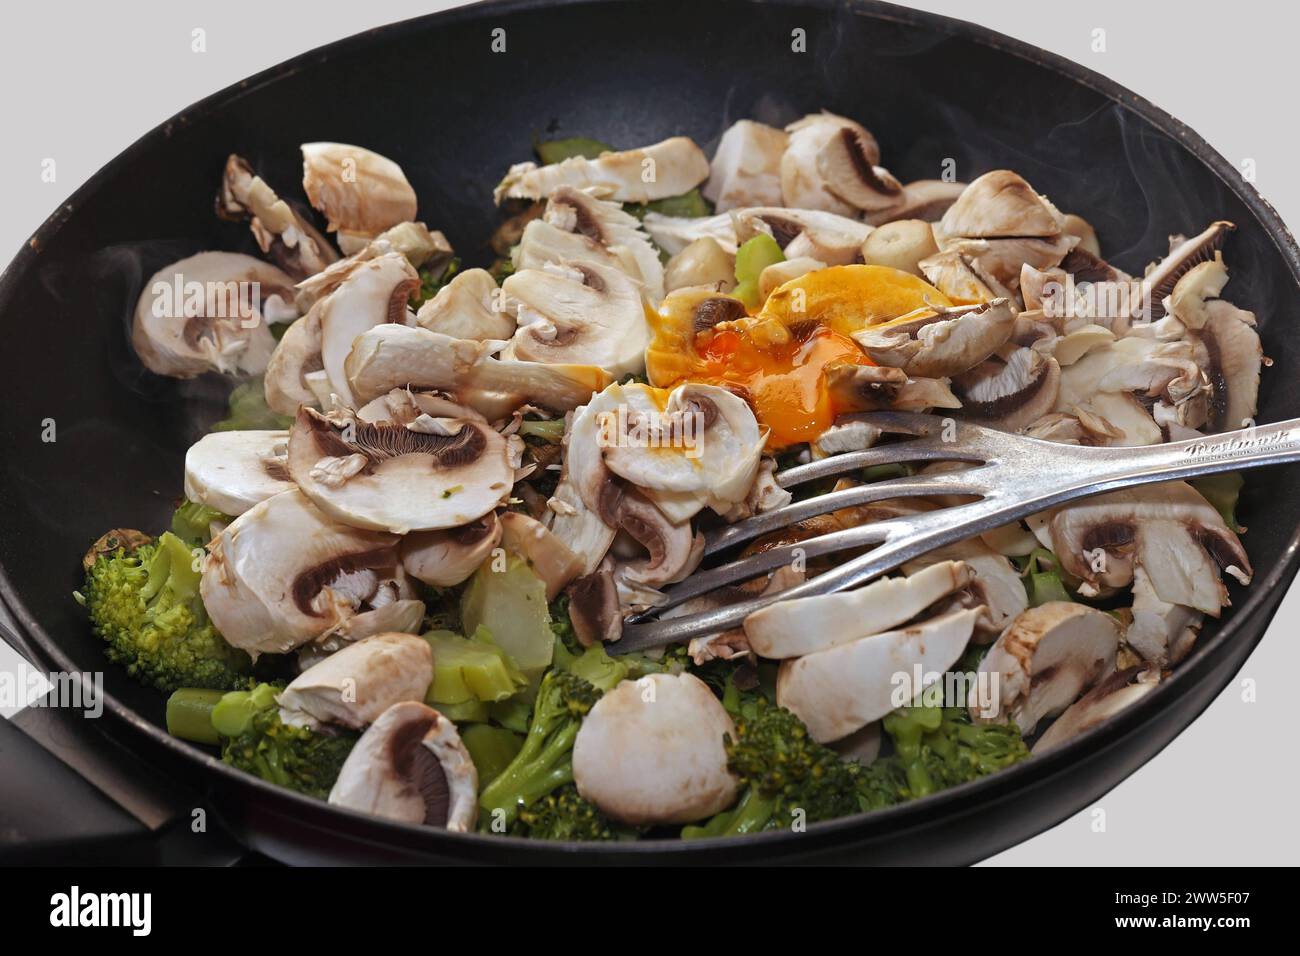 Vegane Gemüseküche Brokkoli, Champignons, Zucchini und Grünkohl während der Zubereitung in einer Bratpfanne *** Vegan Gemüseküche Brokkoli, Pilze, Zucchinis und Grünkohl während der Zubereitung in einer Pfanne Stockfoto